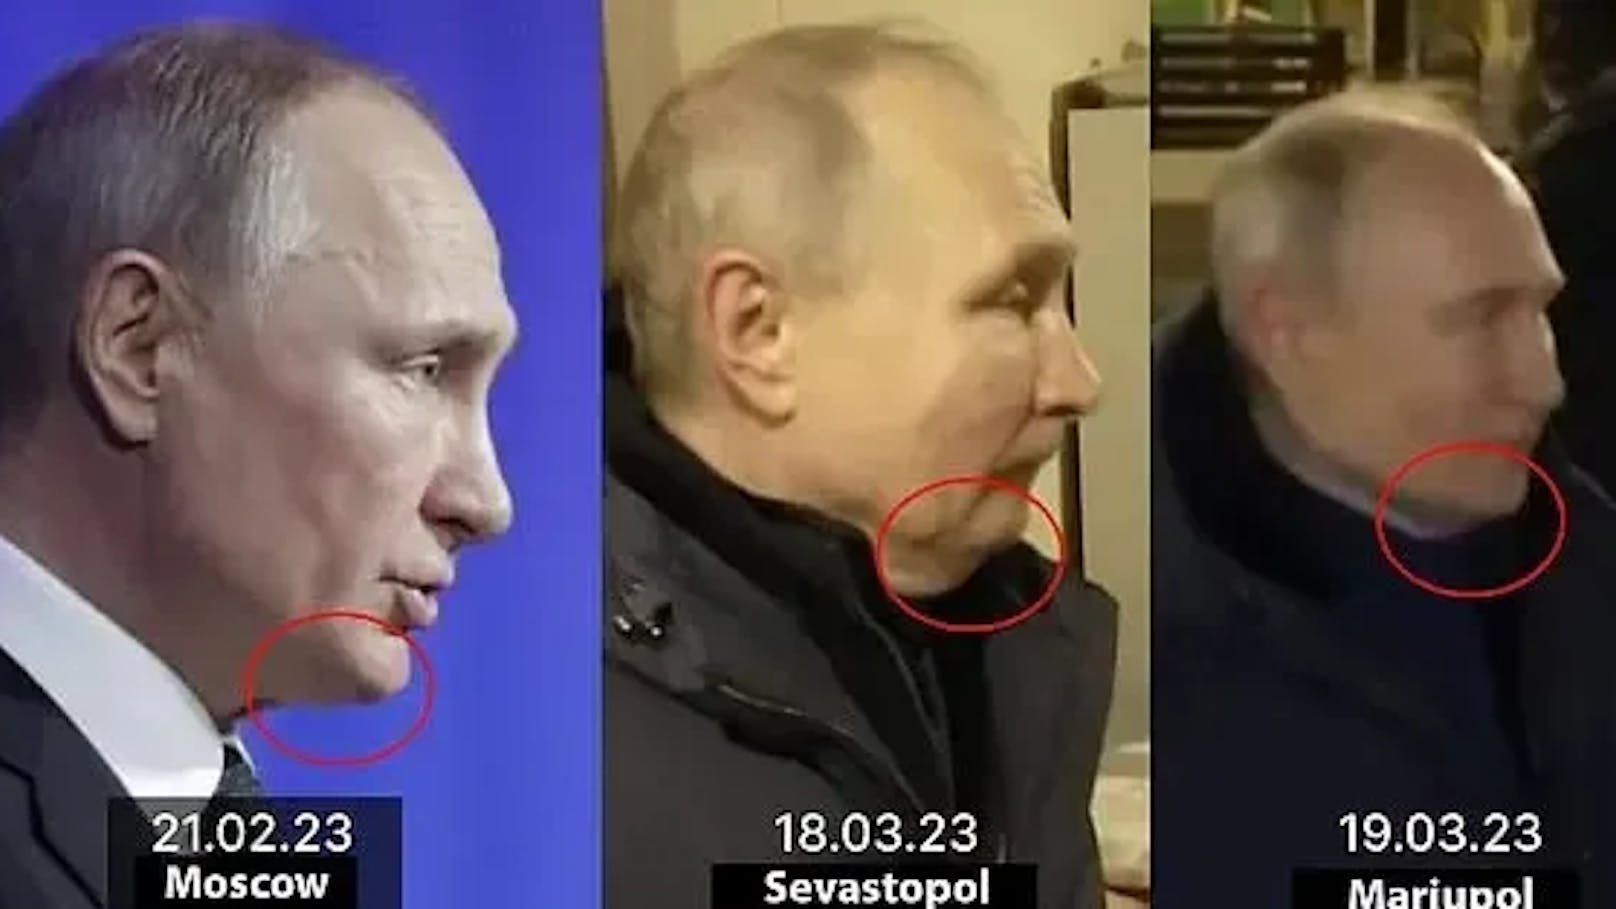 Auch Putins Kinn, das sich in weniger als 30 Tagen mehrmals markant zu verändern schien, rief in der Vergangenheit bereits Zweifel hervor.